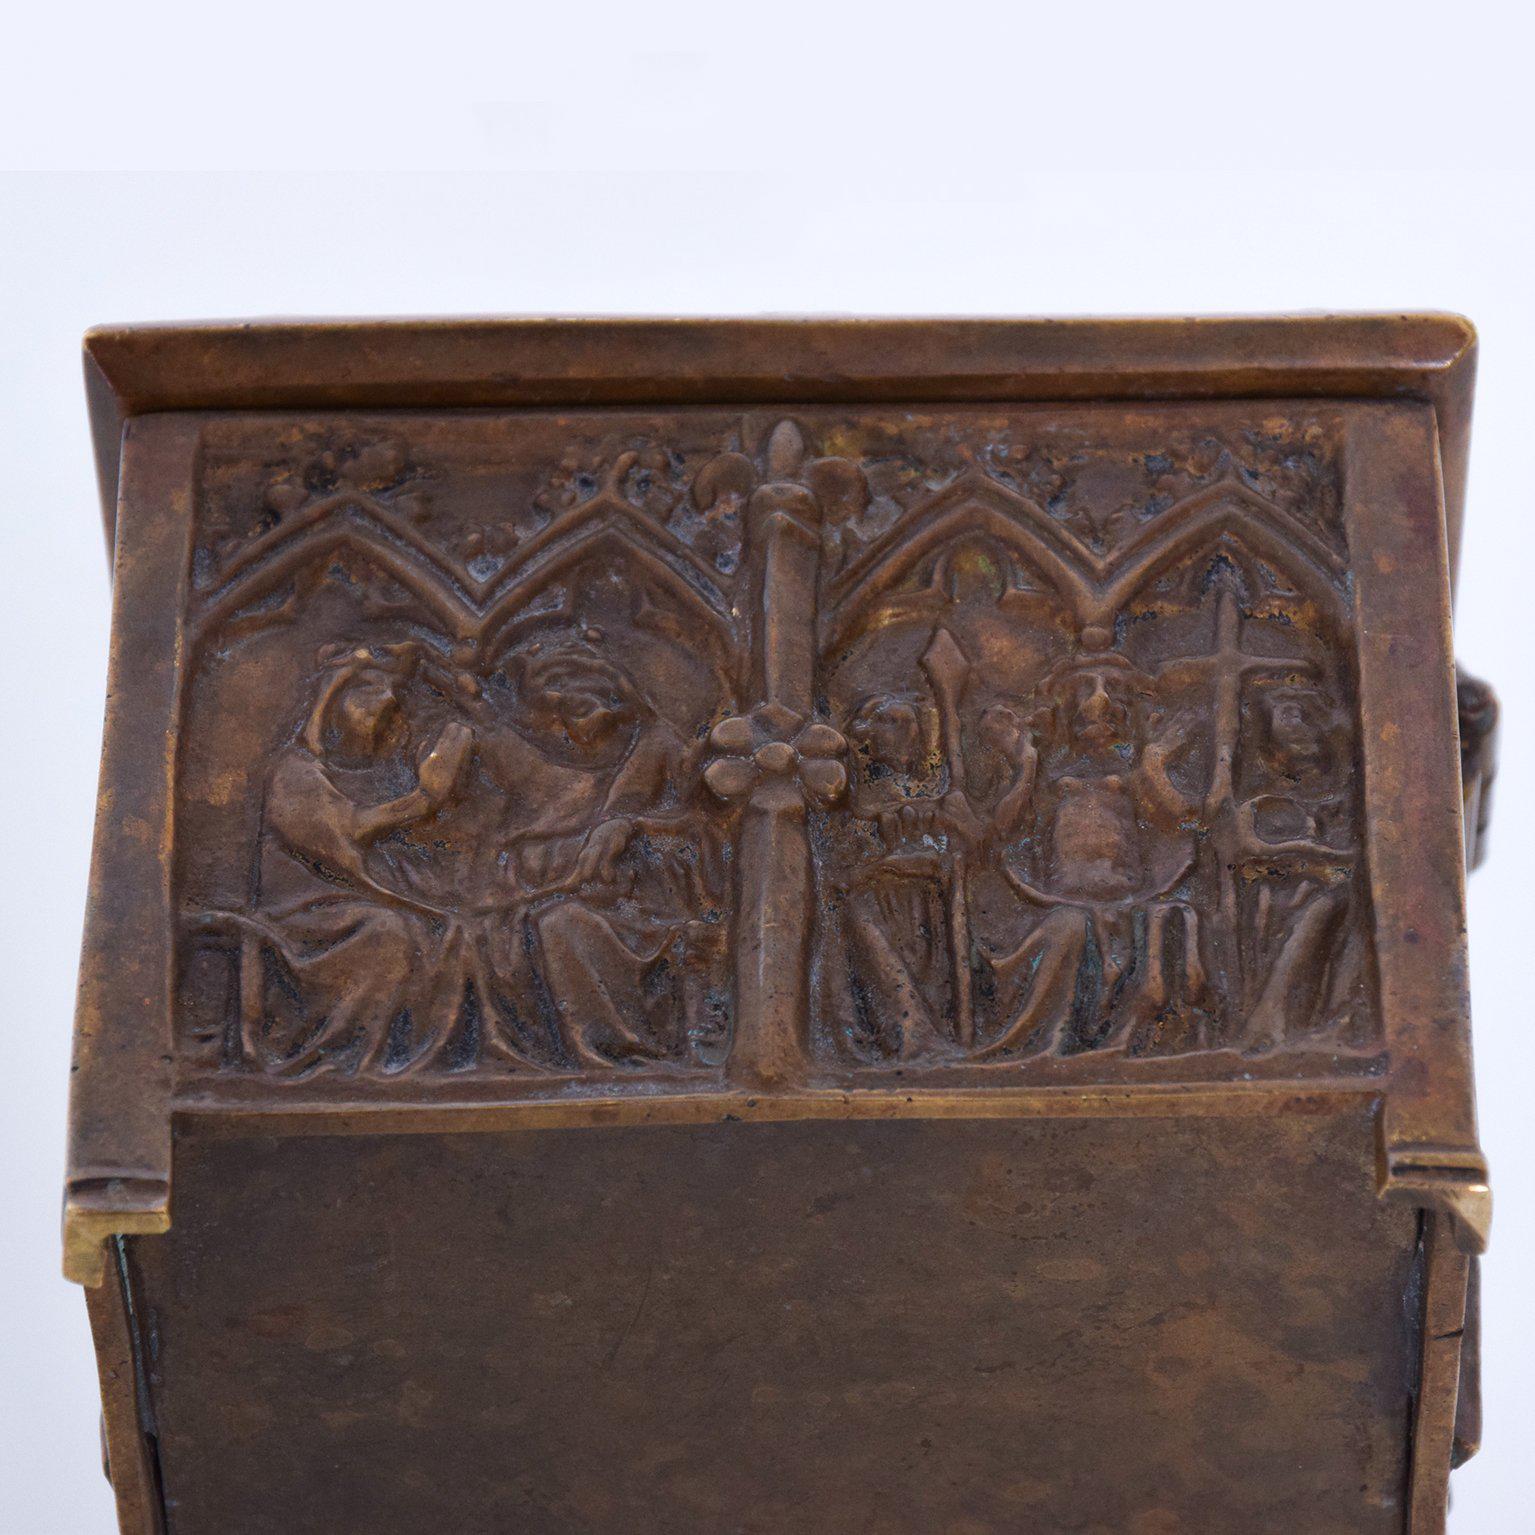 Unknown Antique Bronze Decorative Box Baroque Style